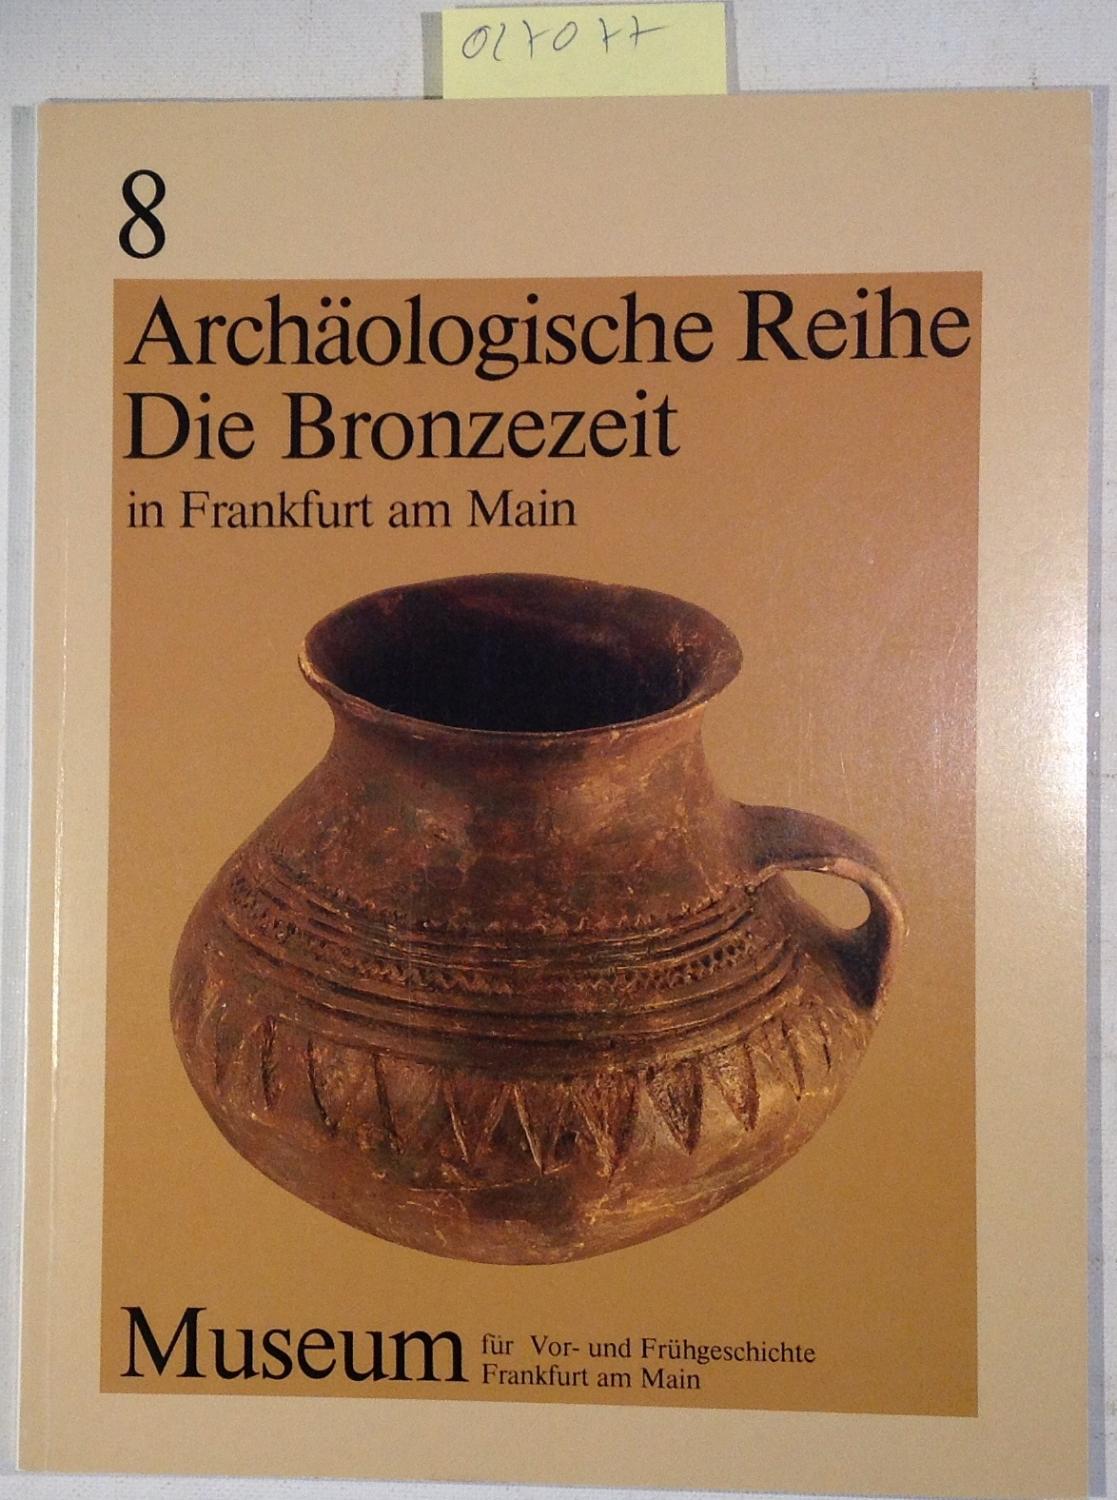 Die Bronzezeit in Frankfurt am Main und im Rhein-Main-Gebiet: Auswahlkatalog. Archäologische Reihe 8 - Meier-Arendt, Walter